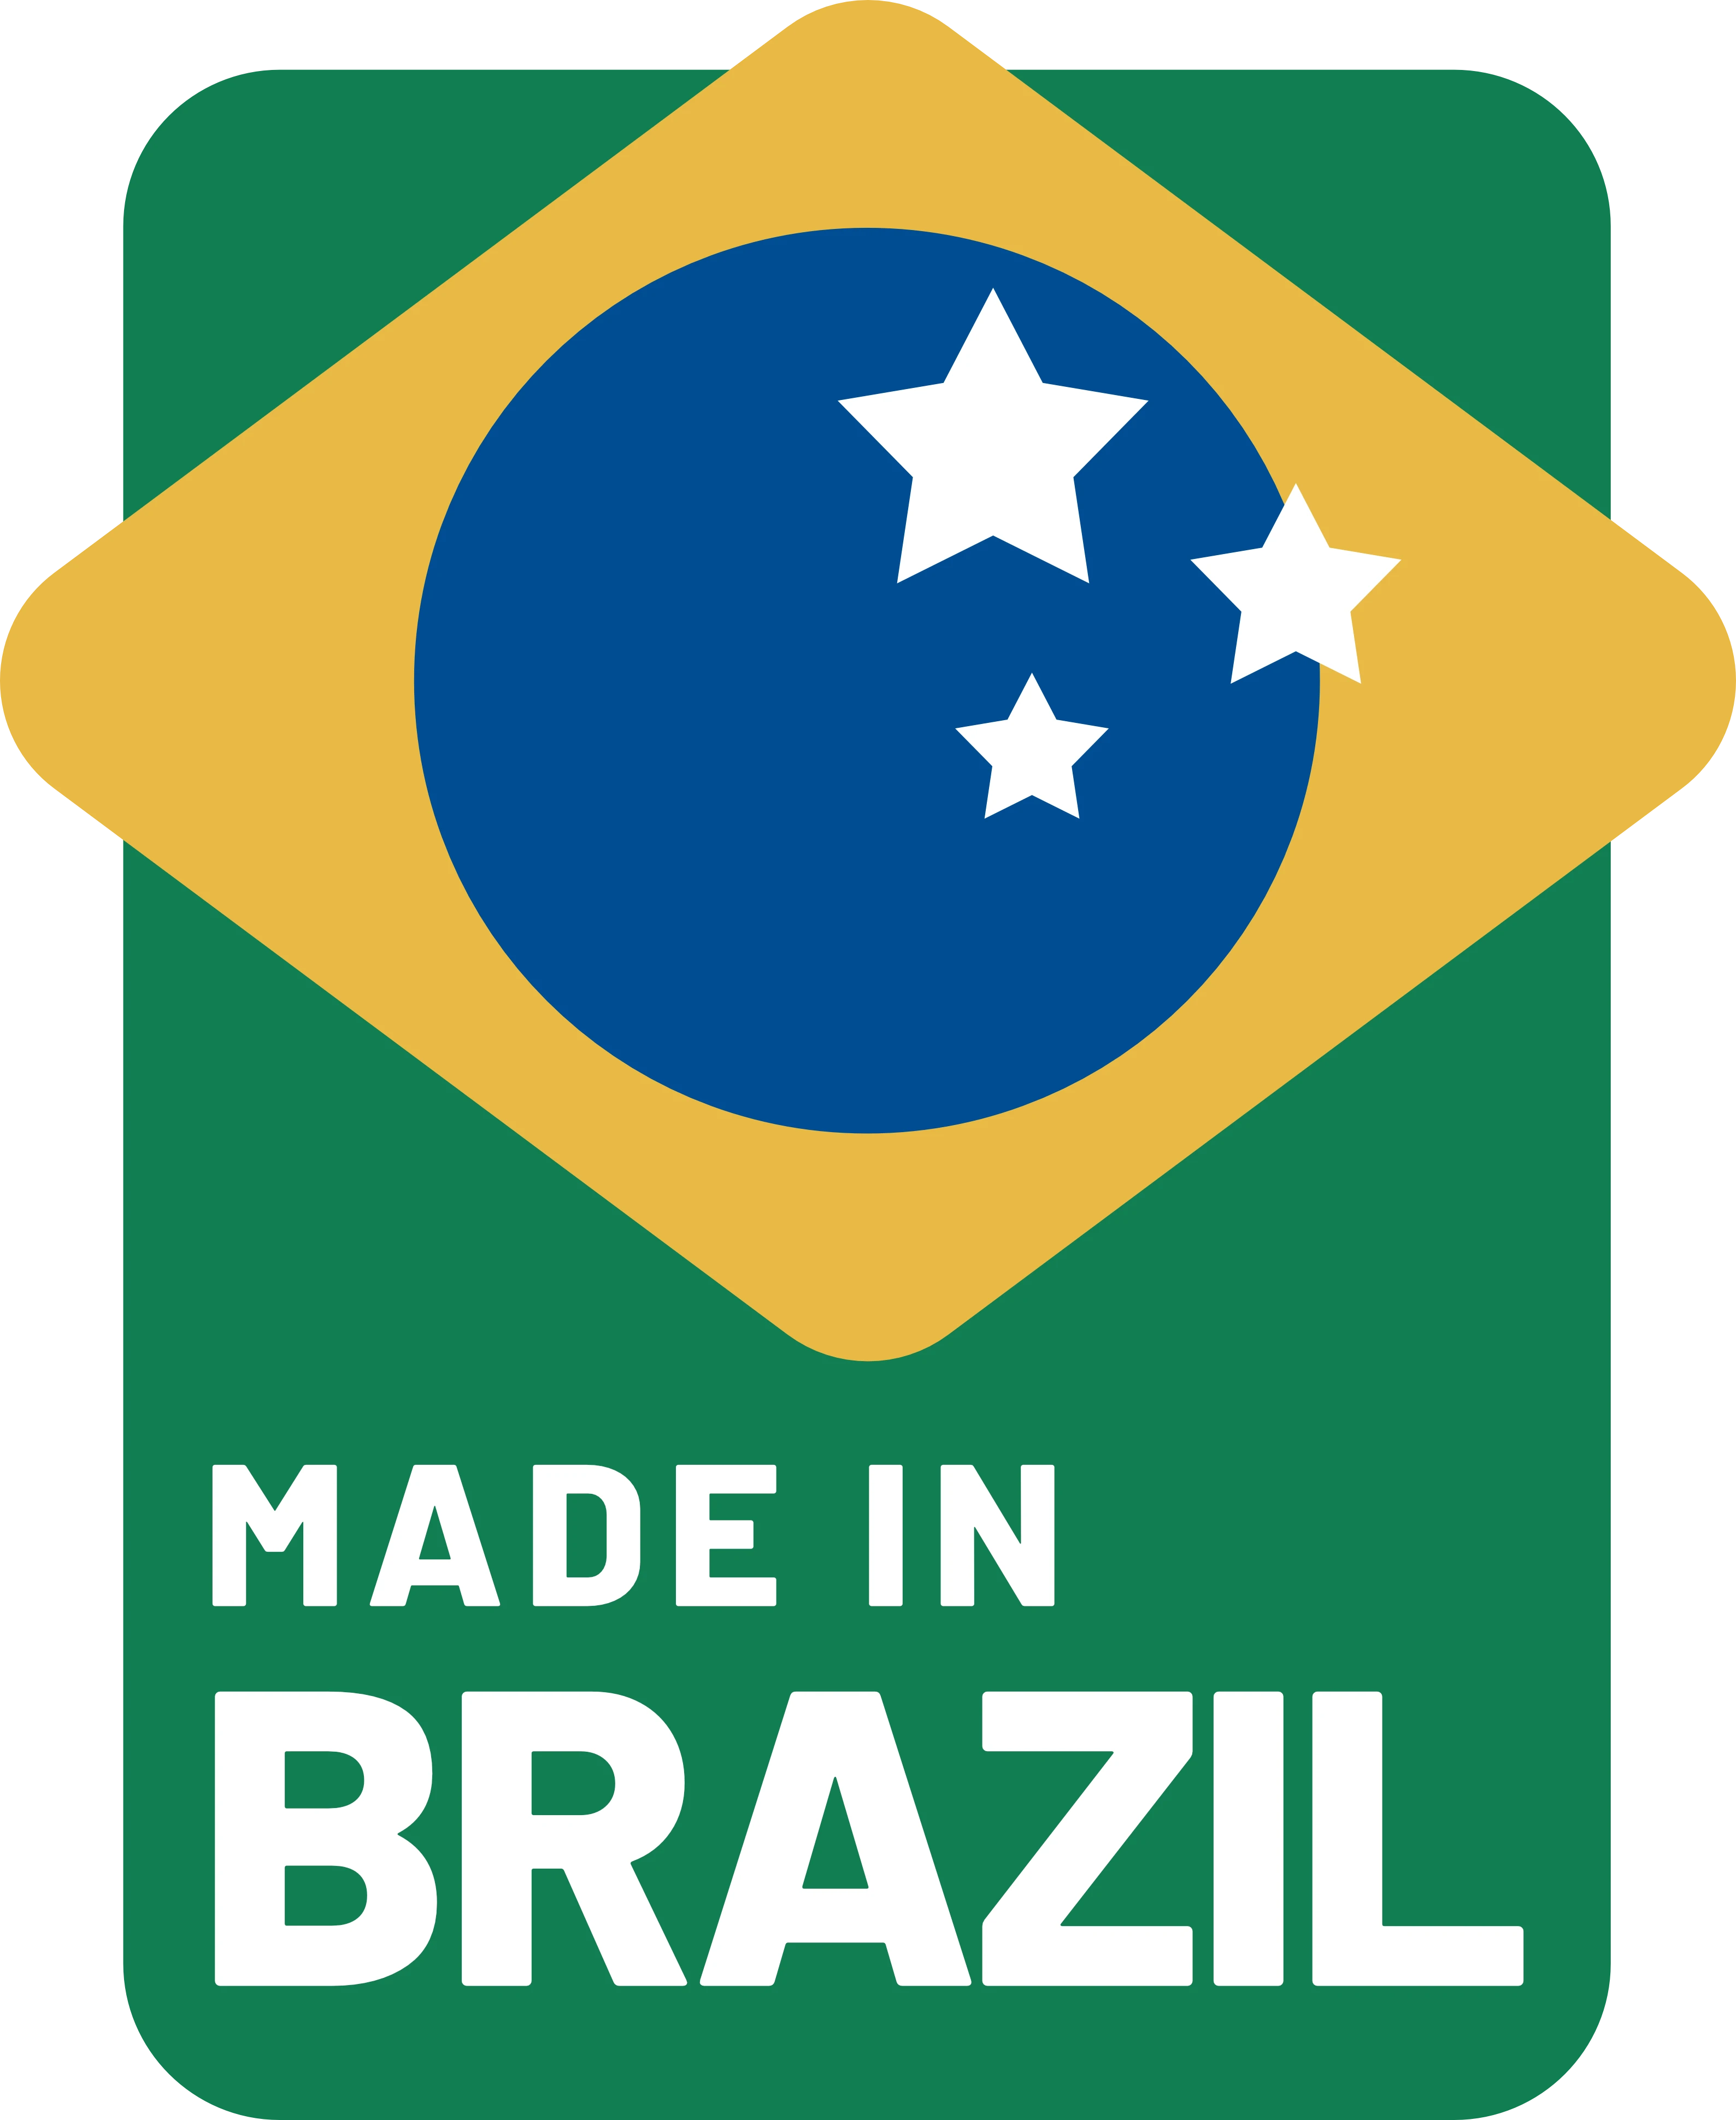 Made-in-Brazil logo